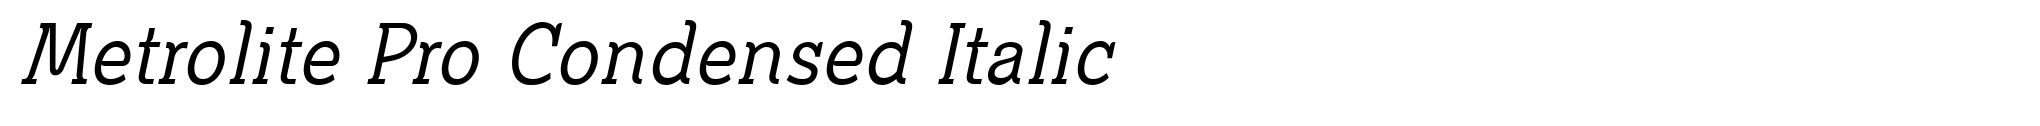 Metrolite Pro Condensed Italic image